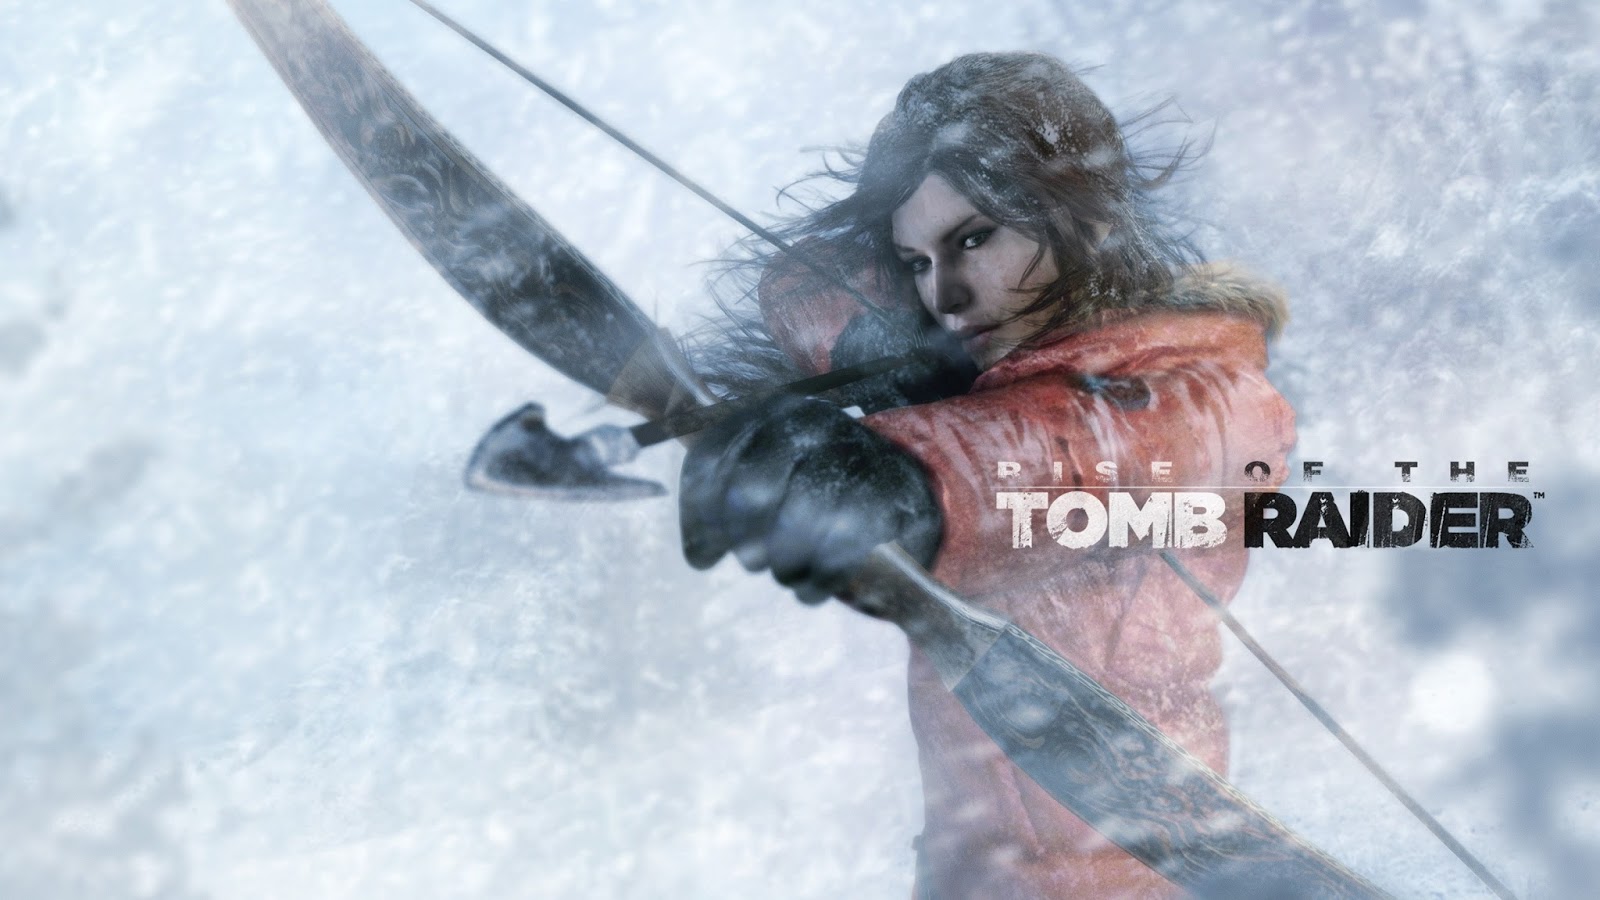 Sessão da Tarde de hoje é Lara Croft - Tomb Raider: Qual o melhor filme da  franquia? - Notícias de cinema - AdoroCinema